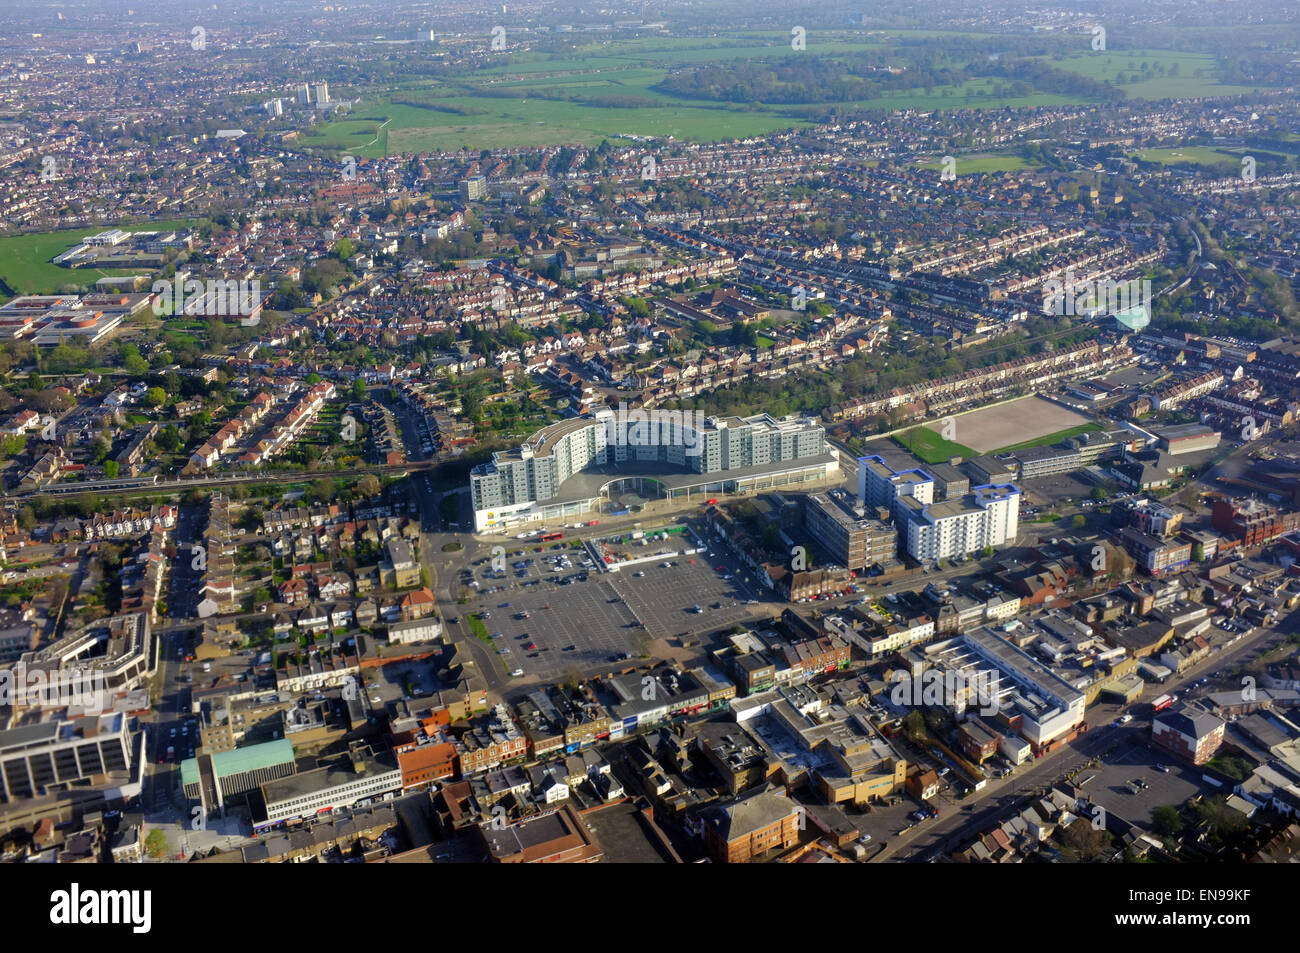 Une vue aérienne de Hounslow Asda prises à partir d'une approche de l'avion d'atterrir à l'aéroport de Heathrow. Banque D'Images